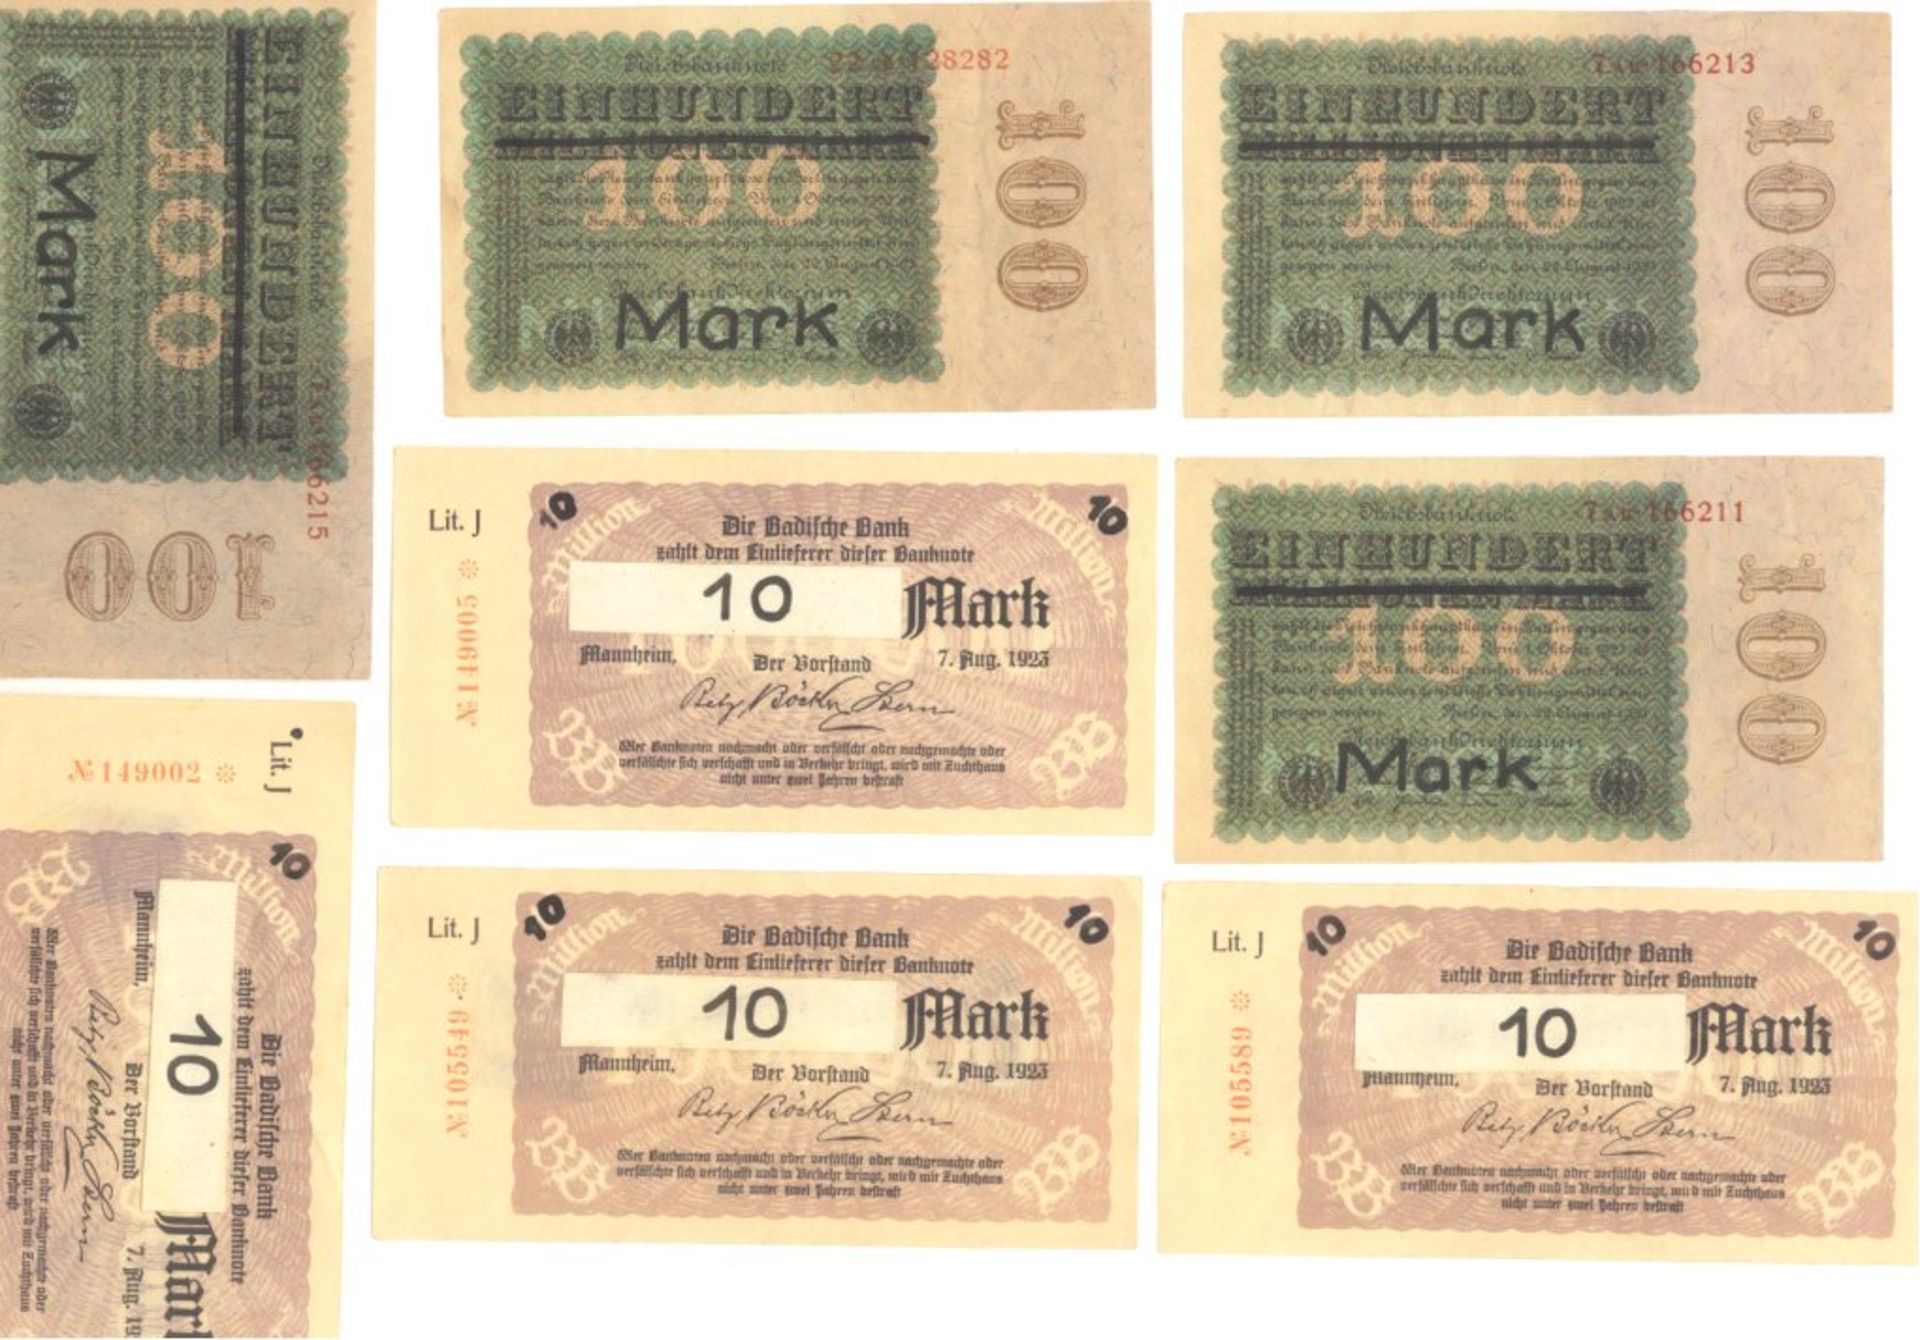 1923 Deutsches Reich INFLATION, BEHELFSBANKNOTENwohl amtliche oder halbamtliche Behelfsbanknoten - Bild 2 aus 3